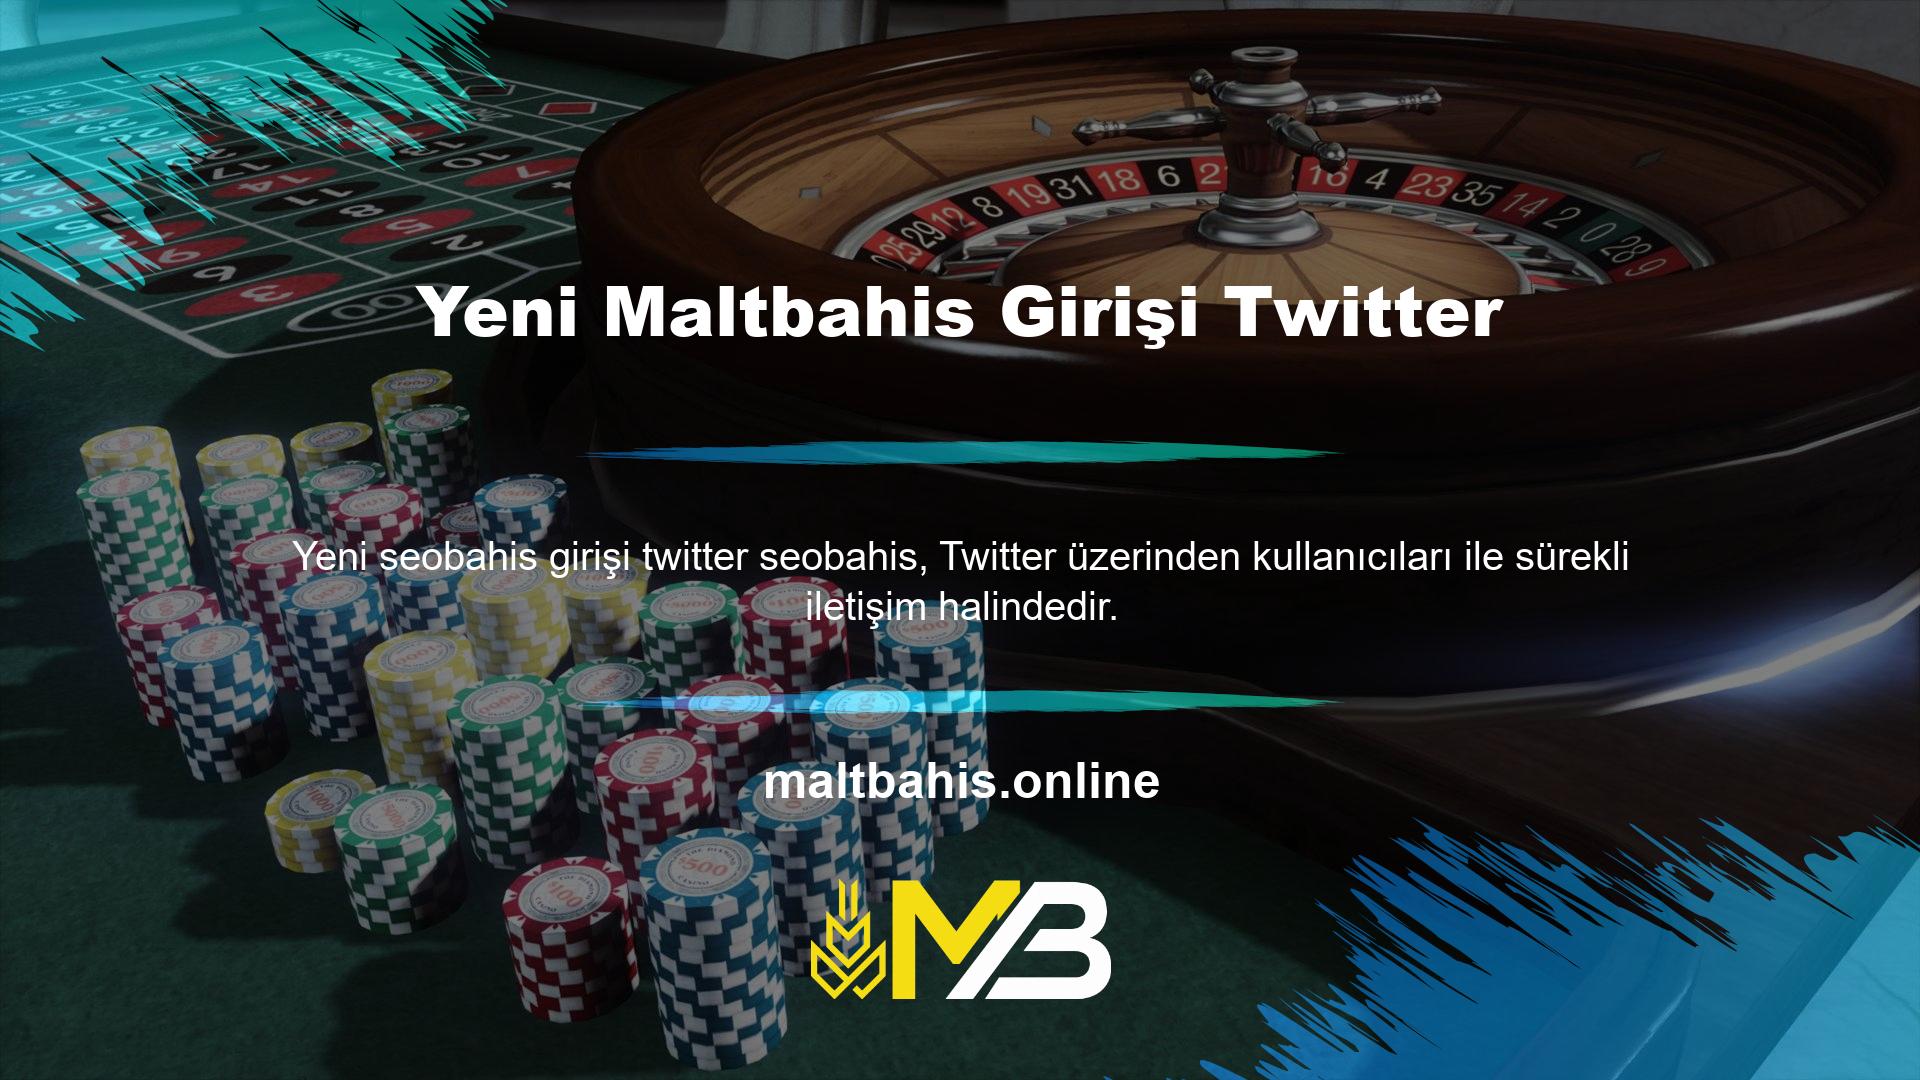 Ayrıca Twitter’da mevcut Maltbahis giriş adresinize kolayca erişebilirsiniz